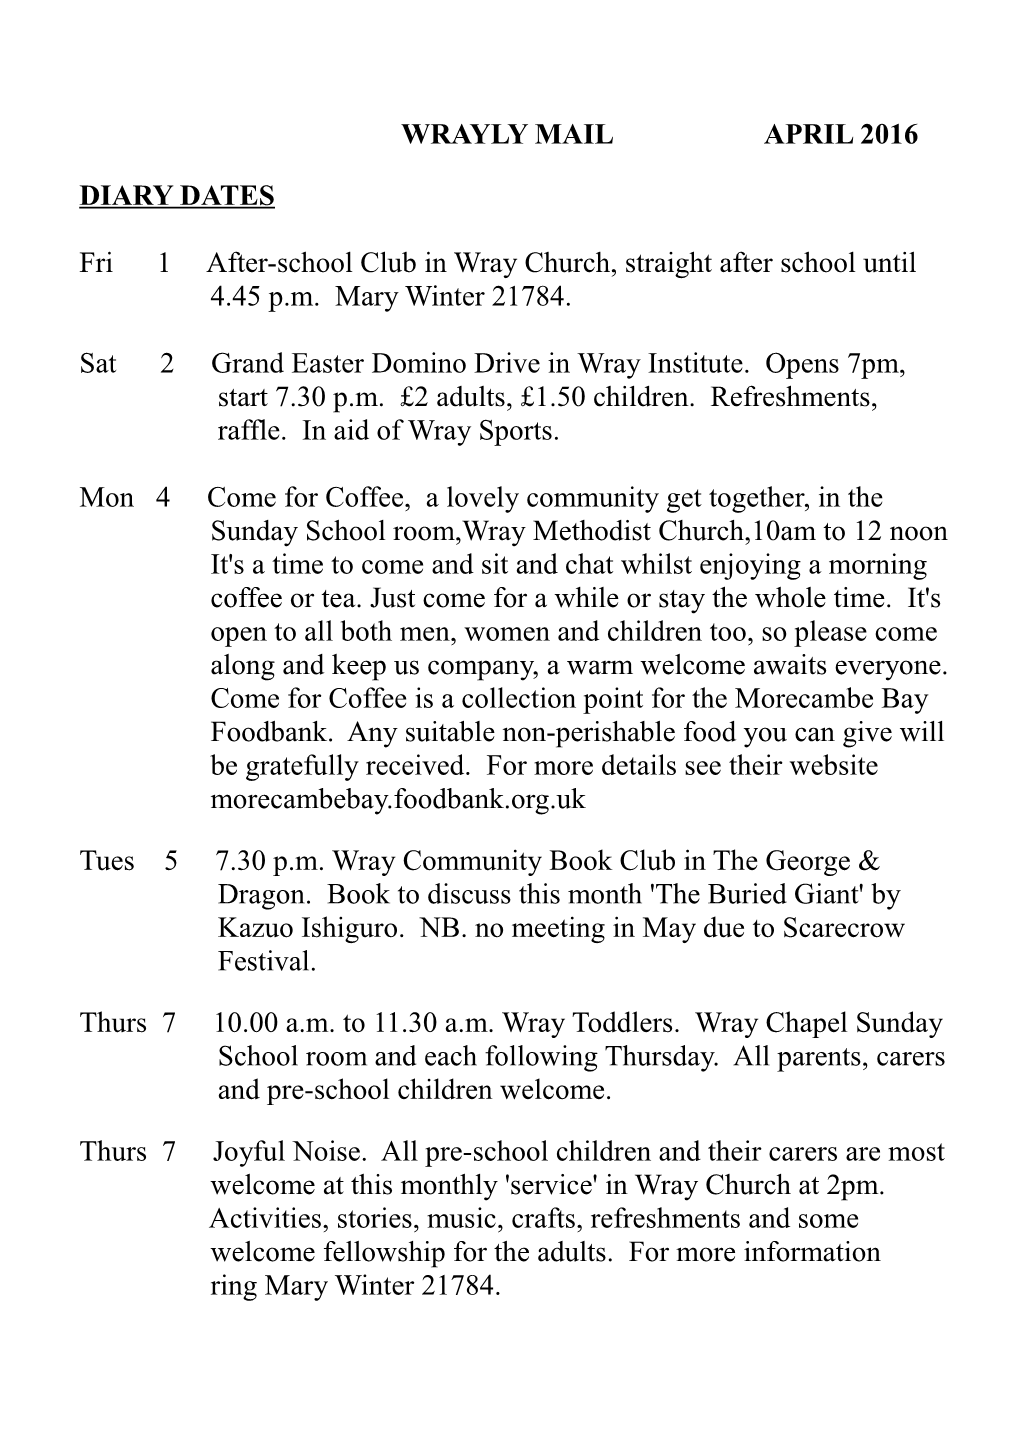 Fri 1 After-School Club in Wray Church, Straight After School Until